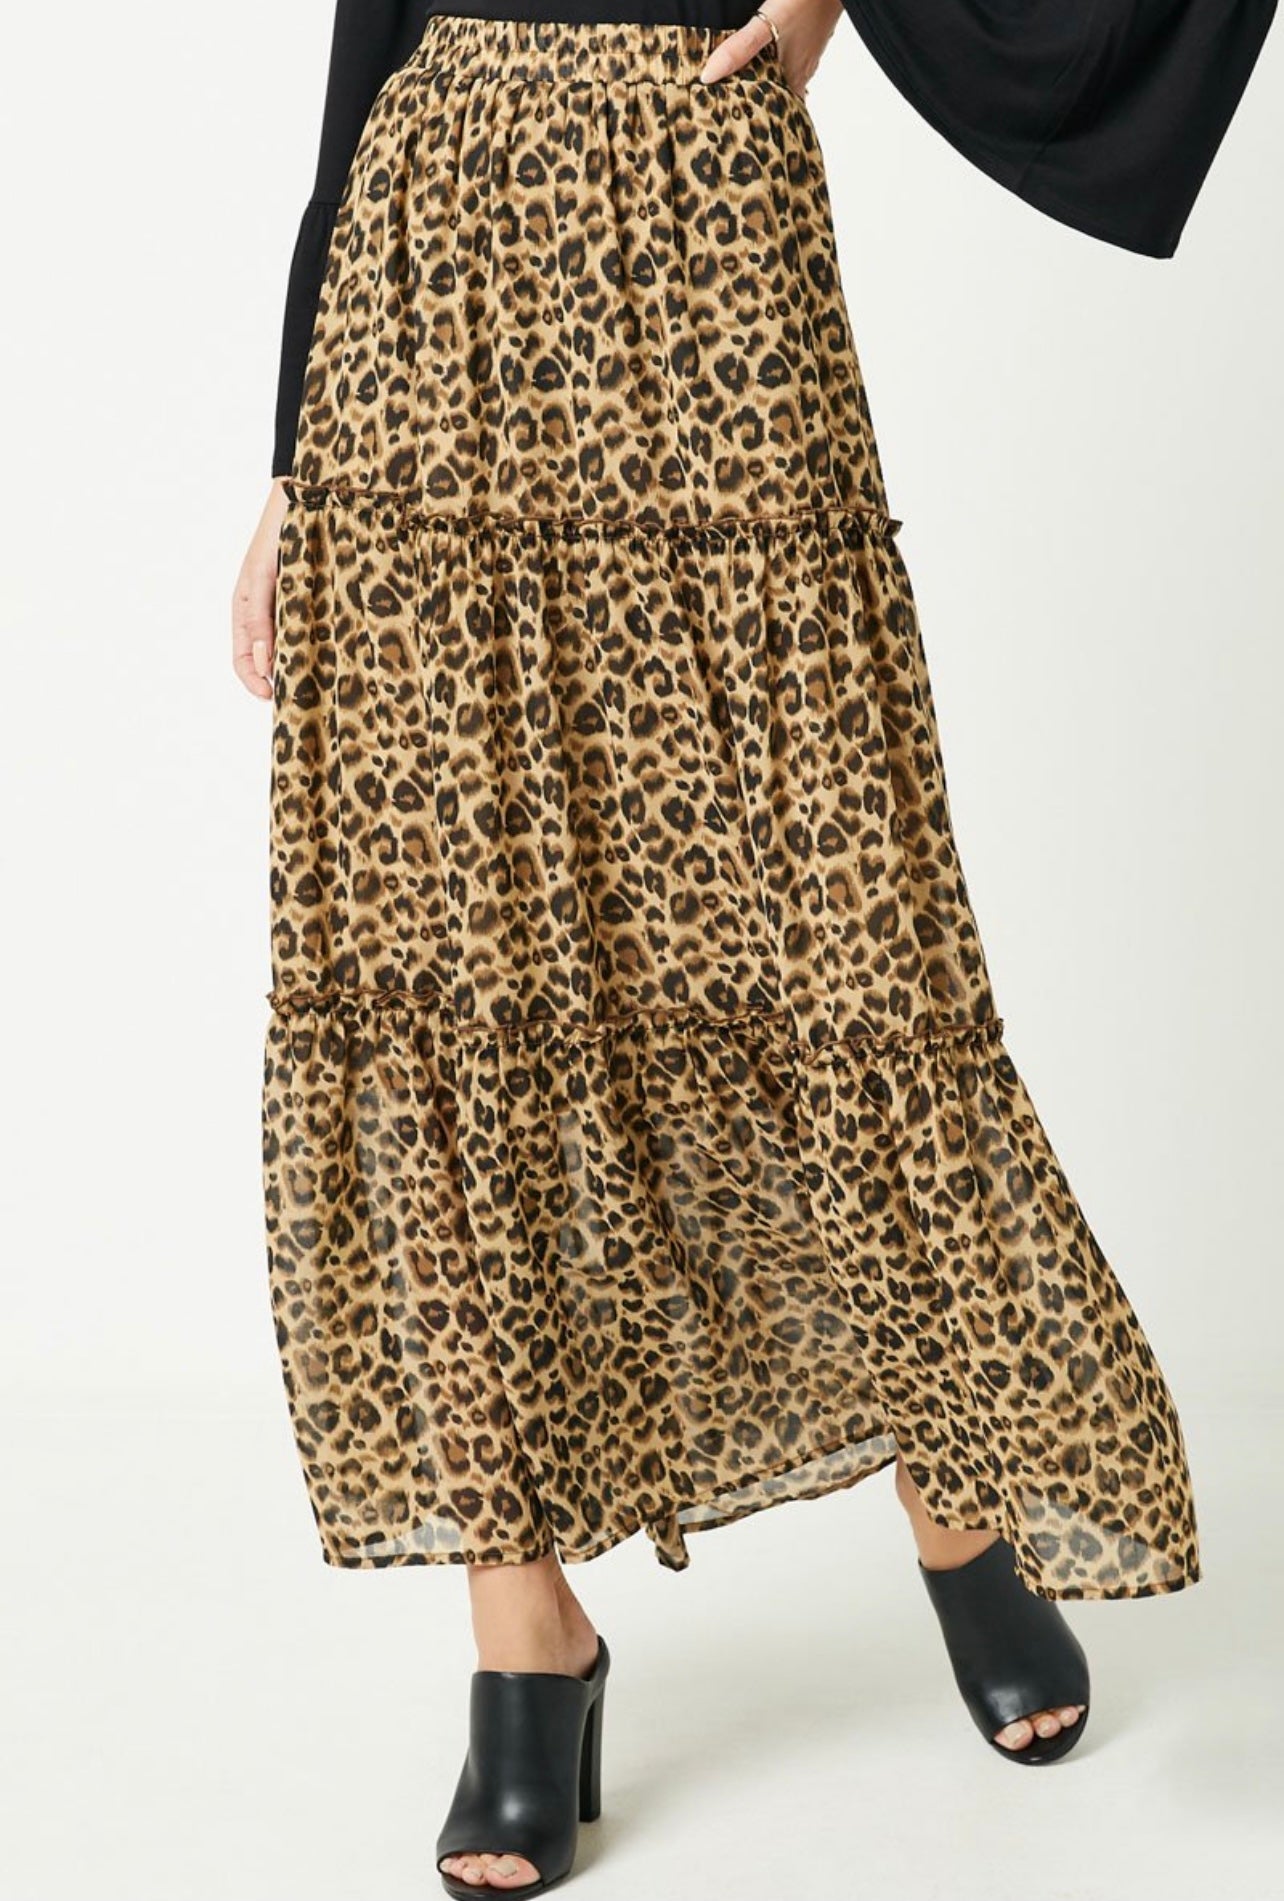 Leopard Print Ruffle Tiered Maxi Skirt